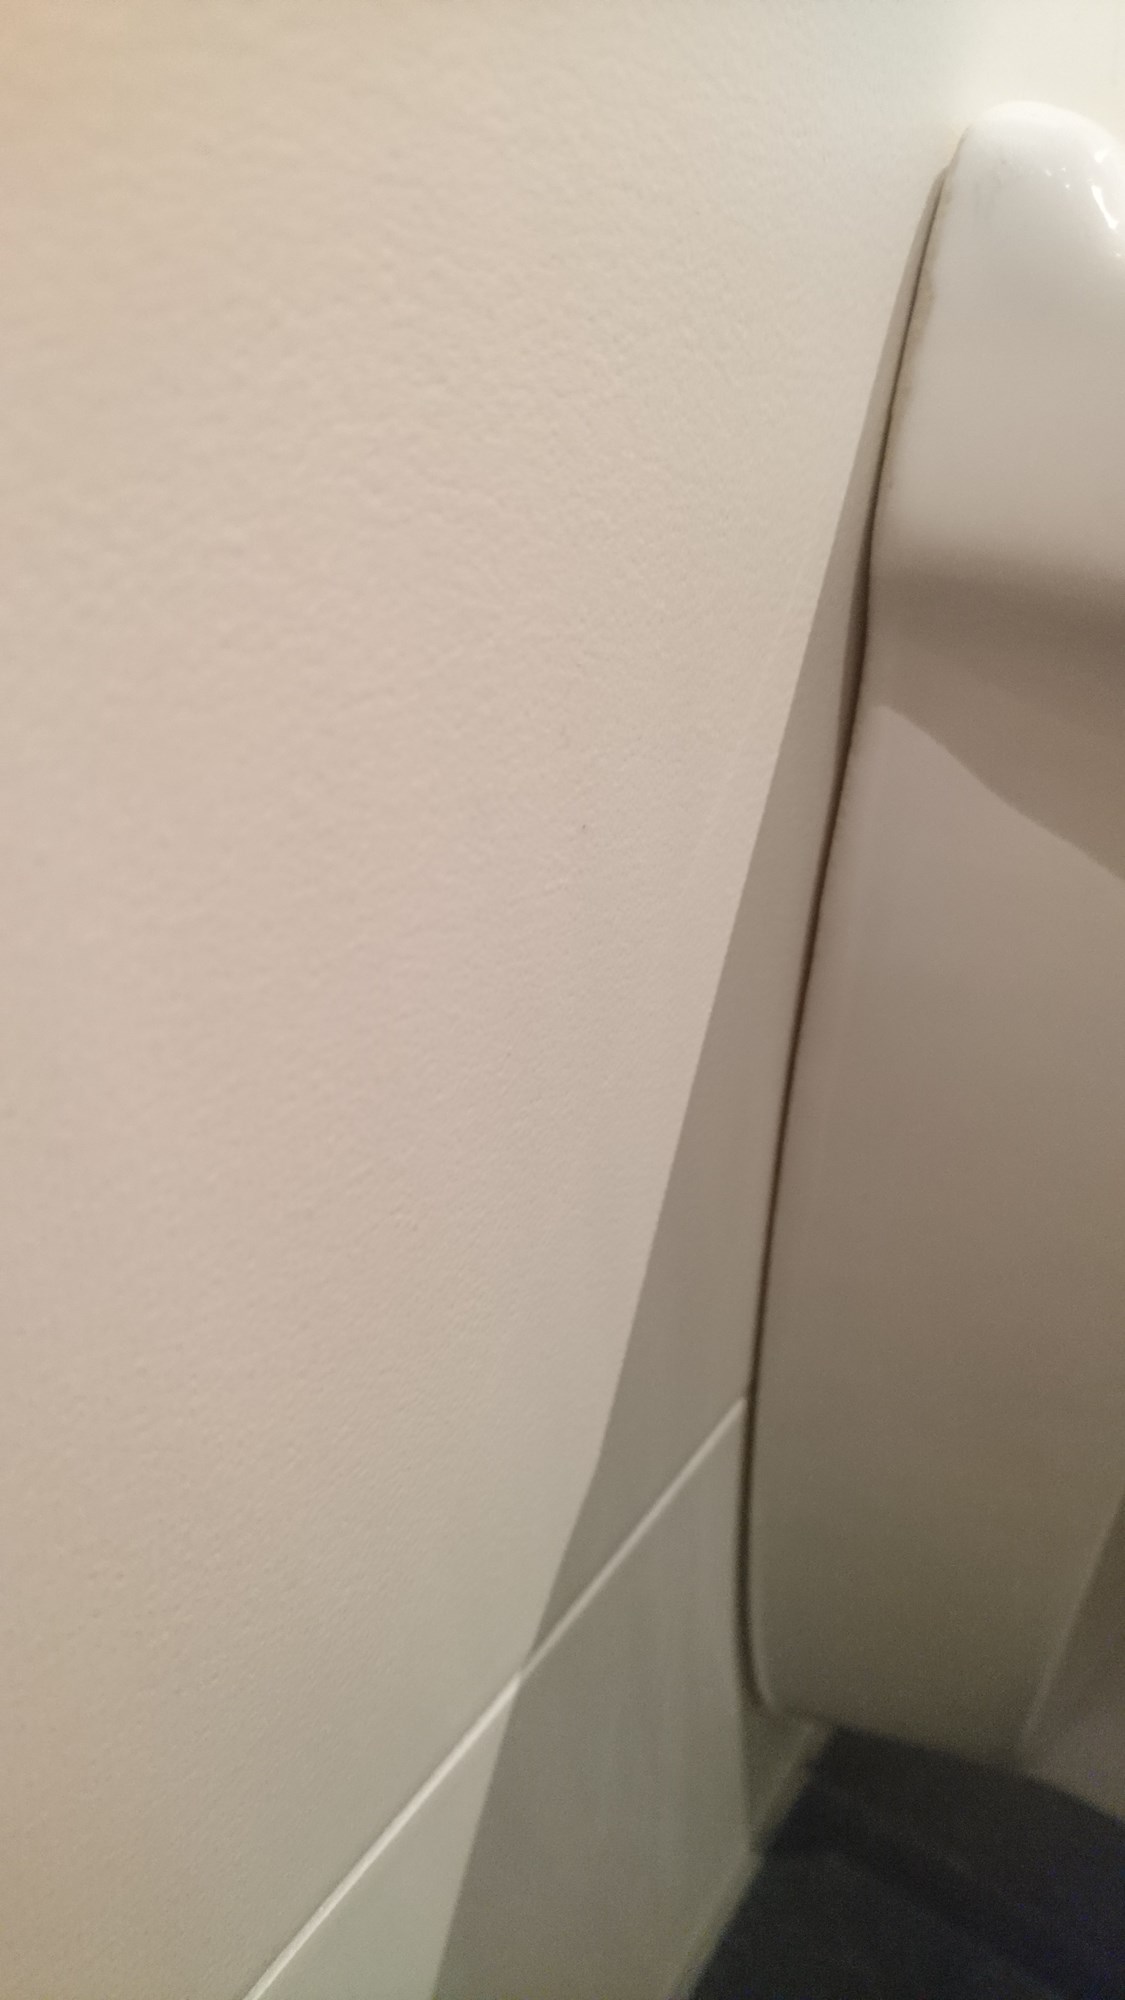 Vegghengt toalett uten fugelim rører på seg  - DSC_0476.JPG - drogin